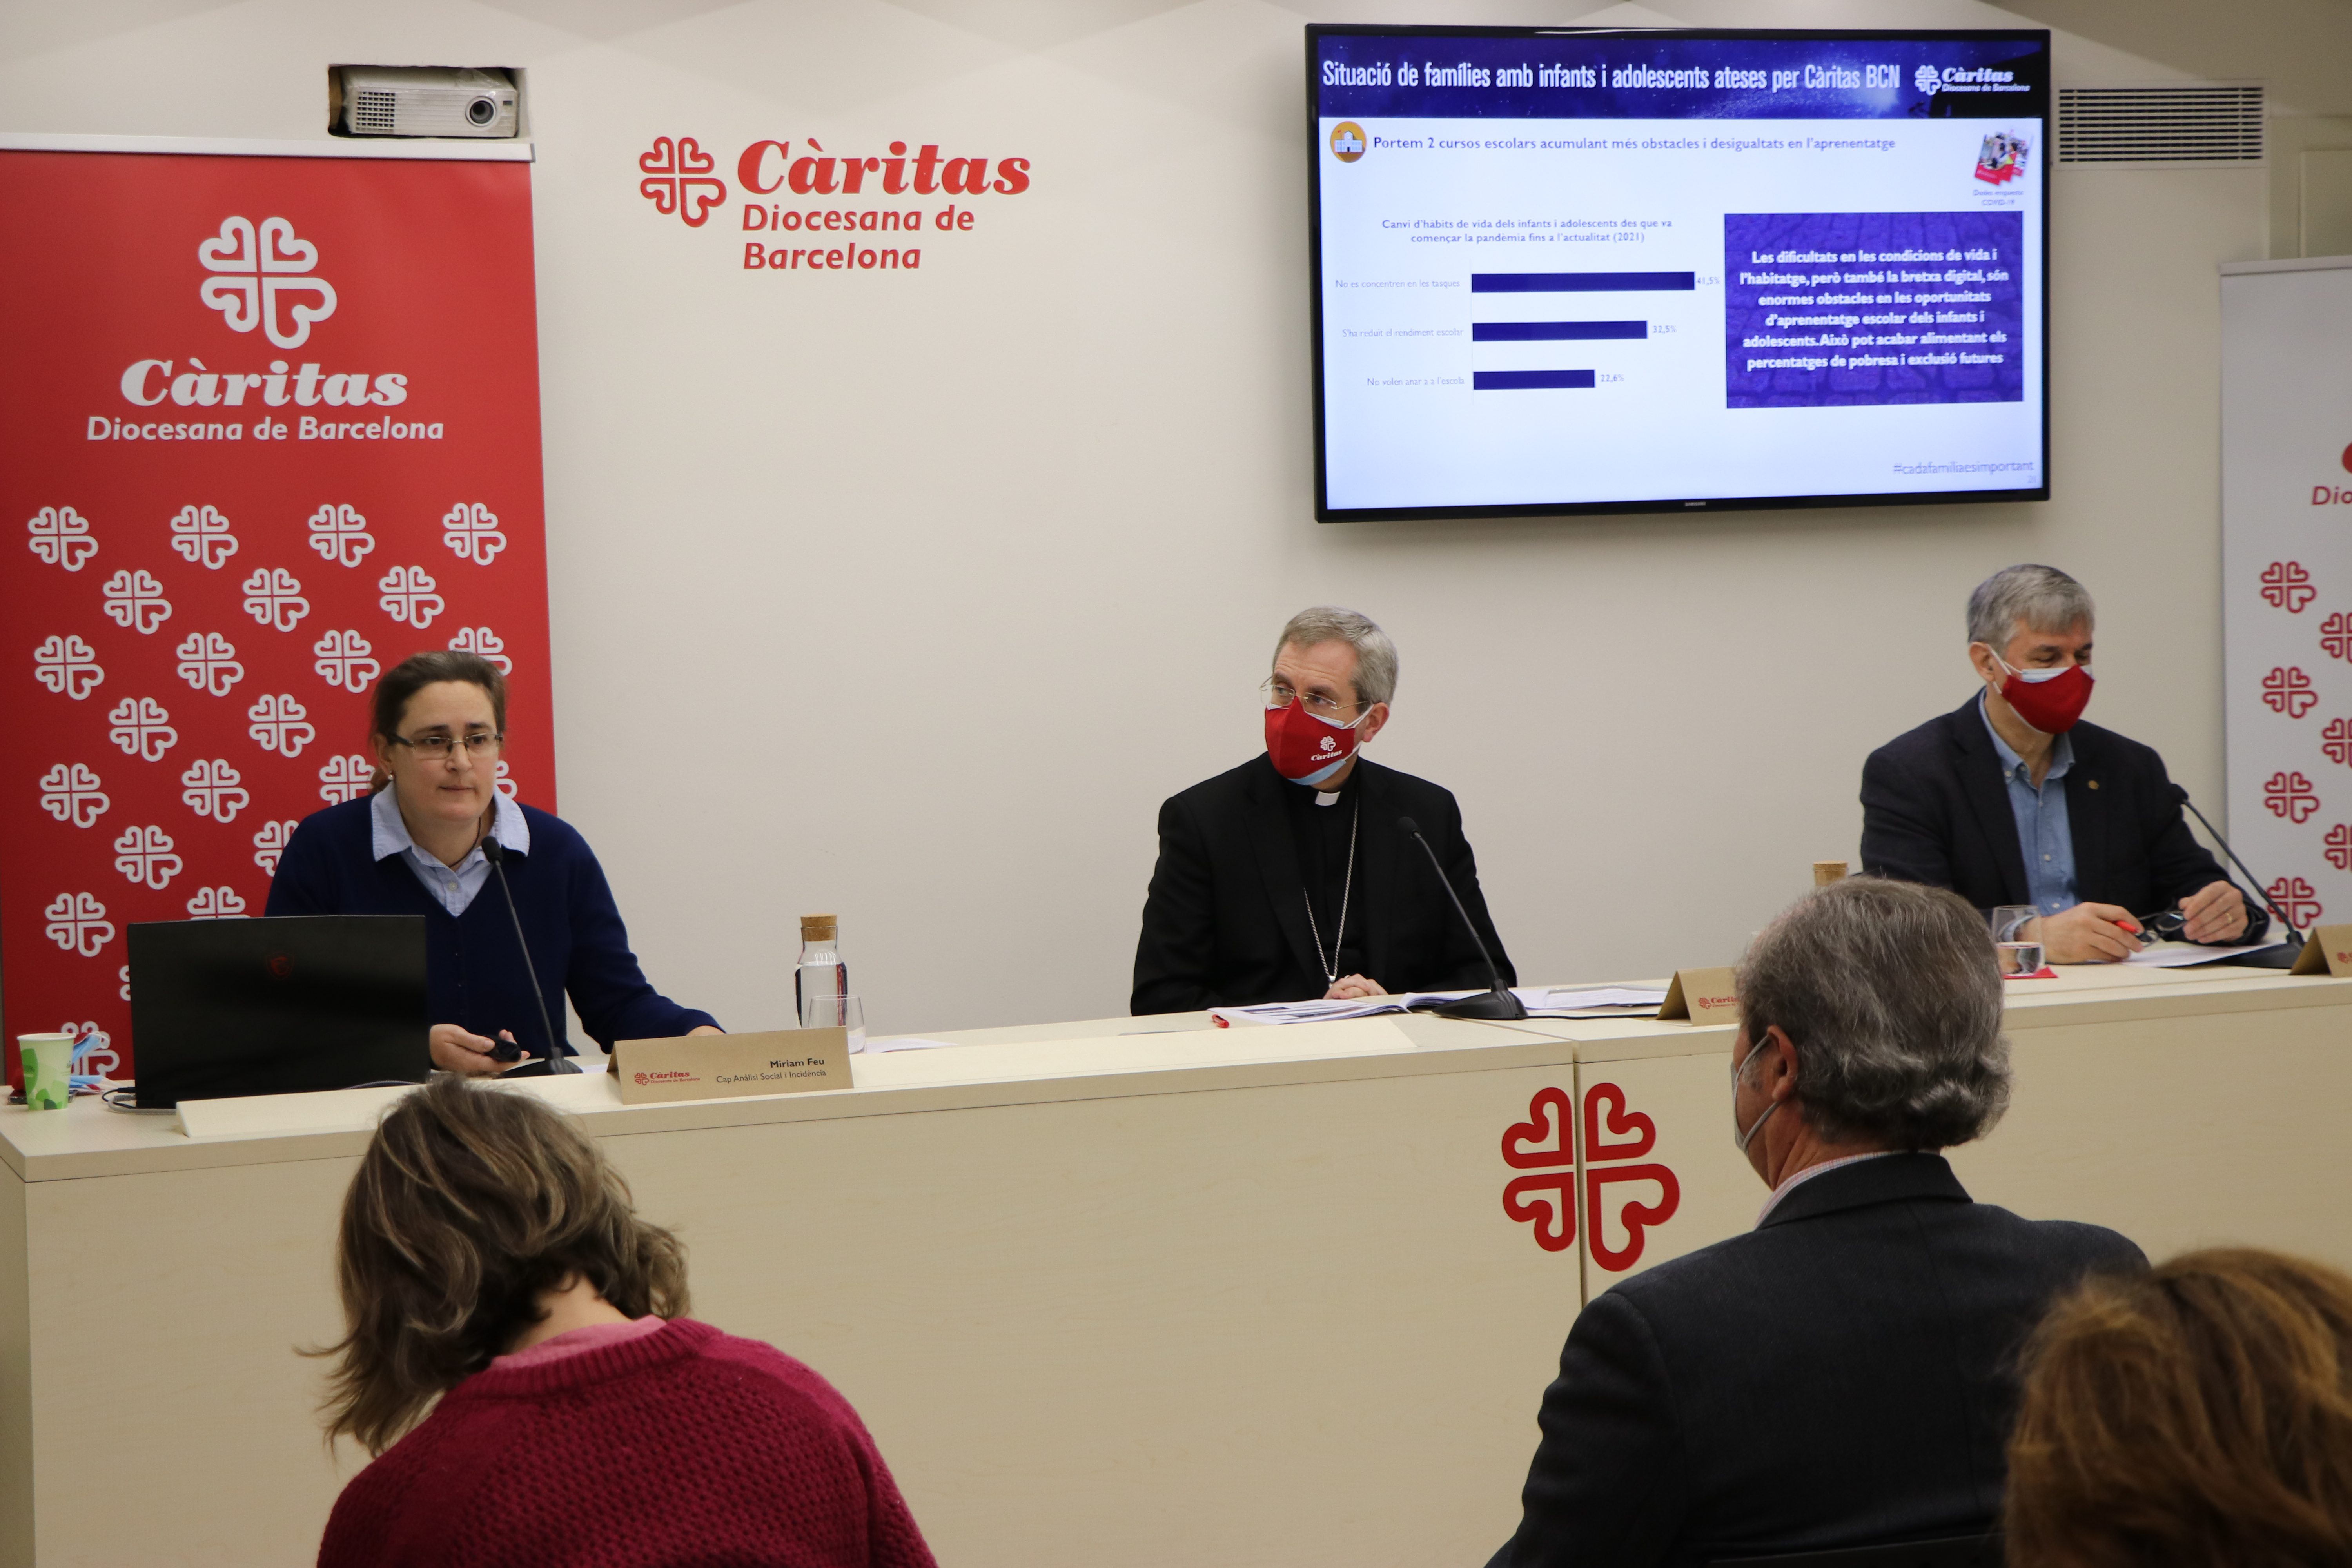 4 de cada 10 familias con niños y adolescentes de la diócesis de Barcelona se encuentran en exclusión social